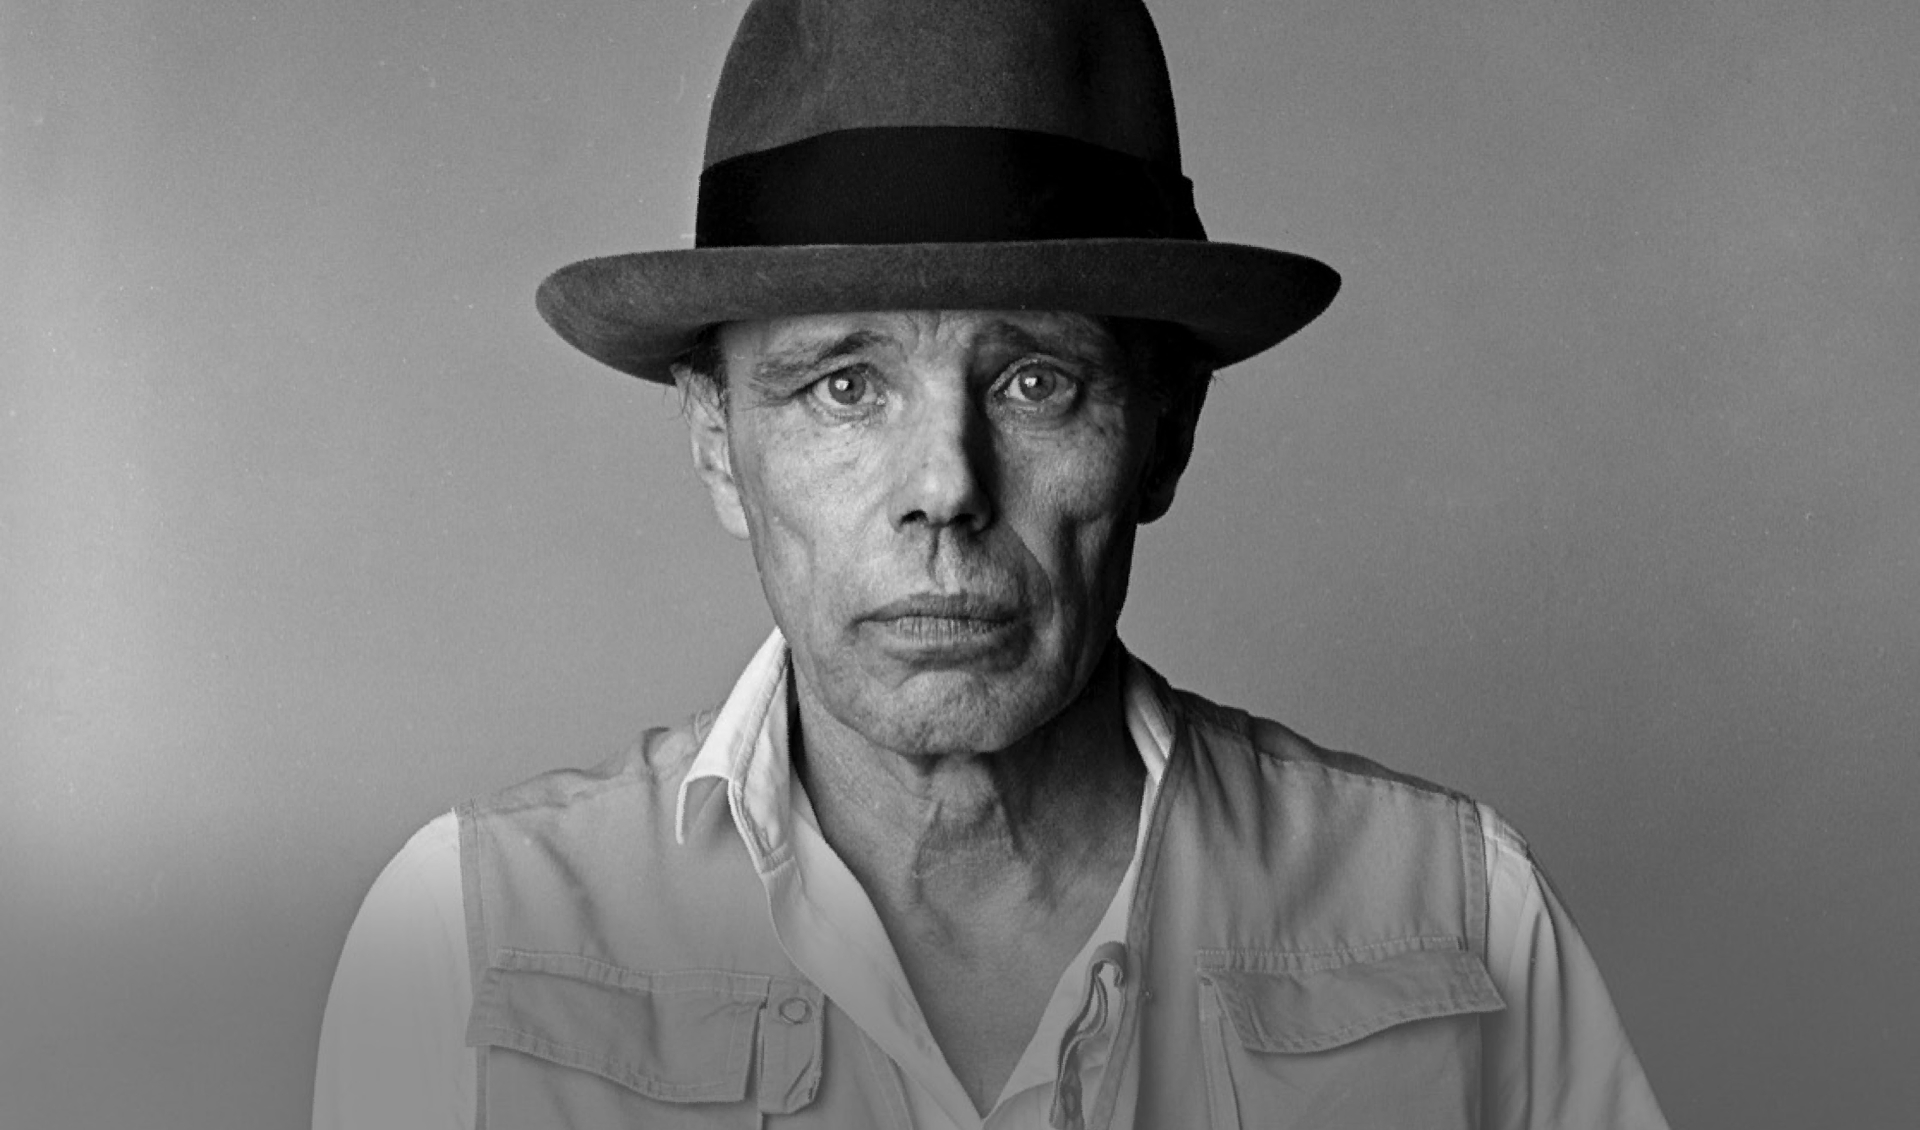 Kunstenaar, performer, activist Joseph Beuys. Foto: PR